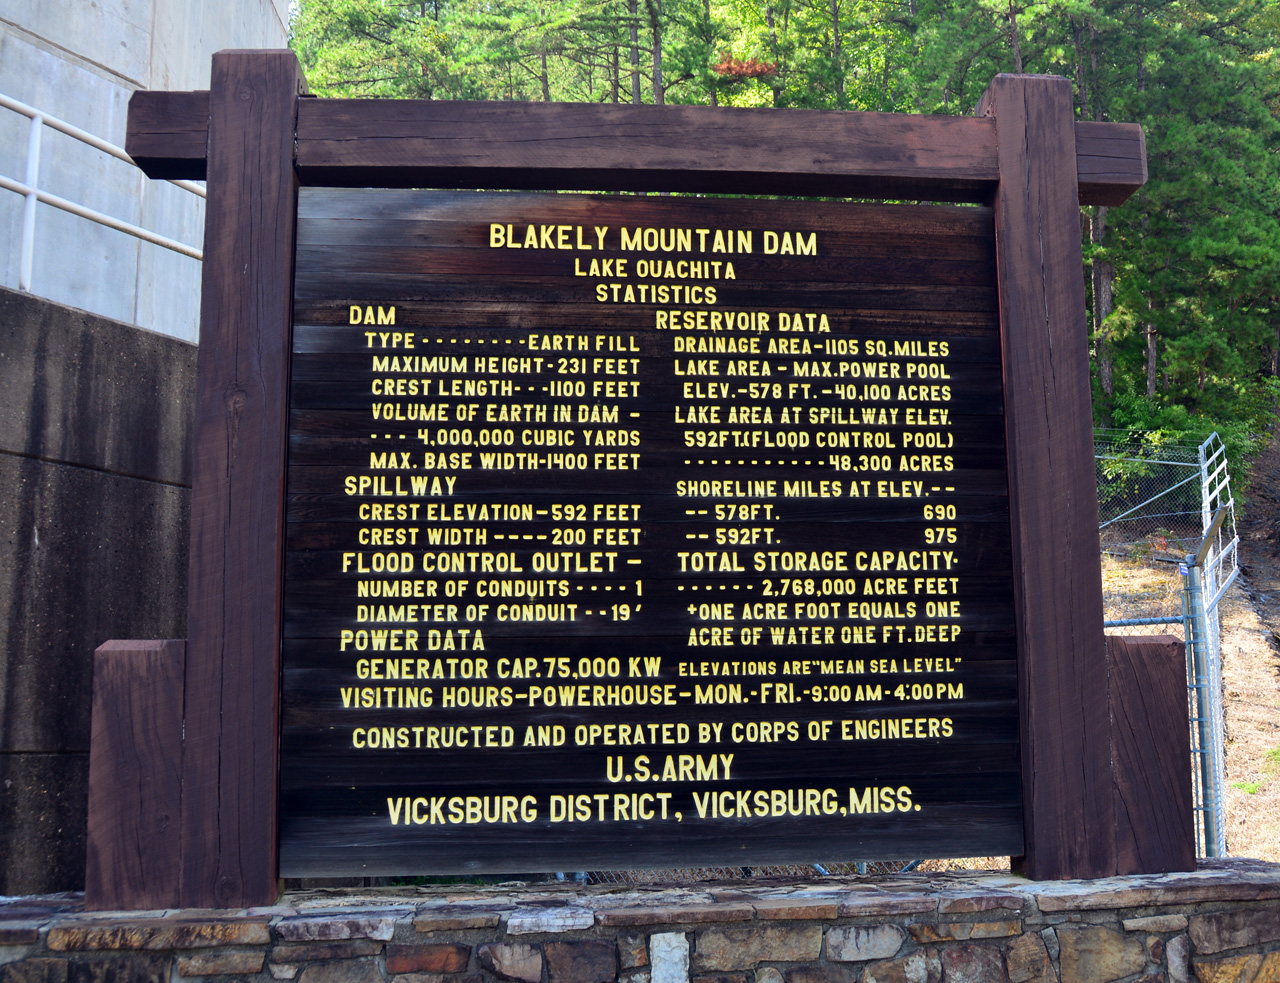 2014-09-20, 015, Blakely Mountain Dam